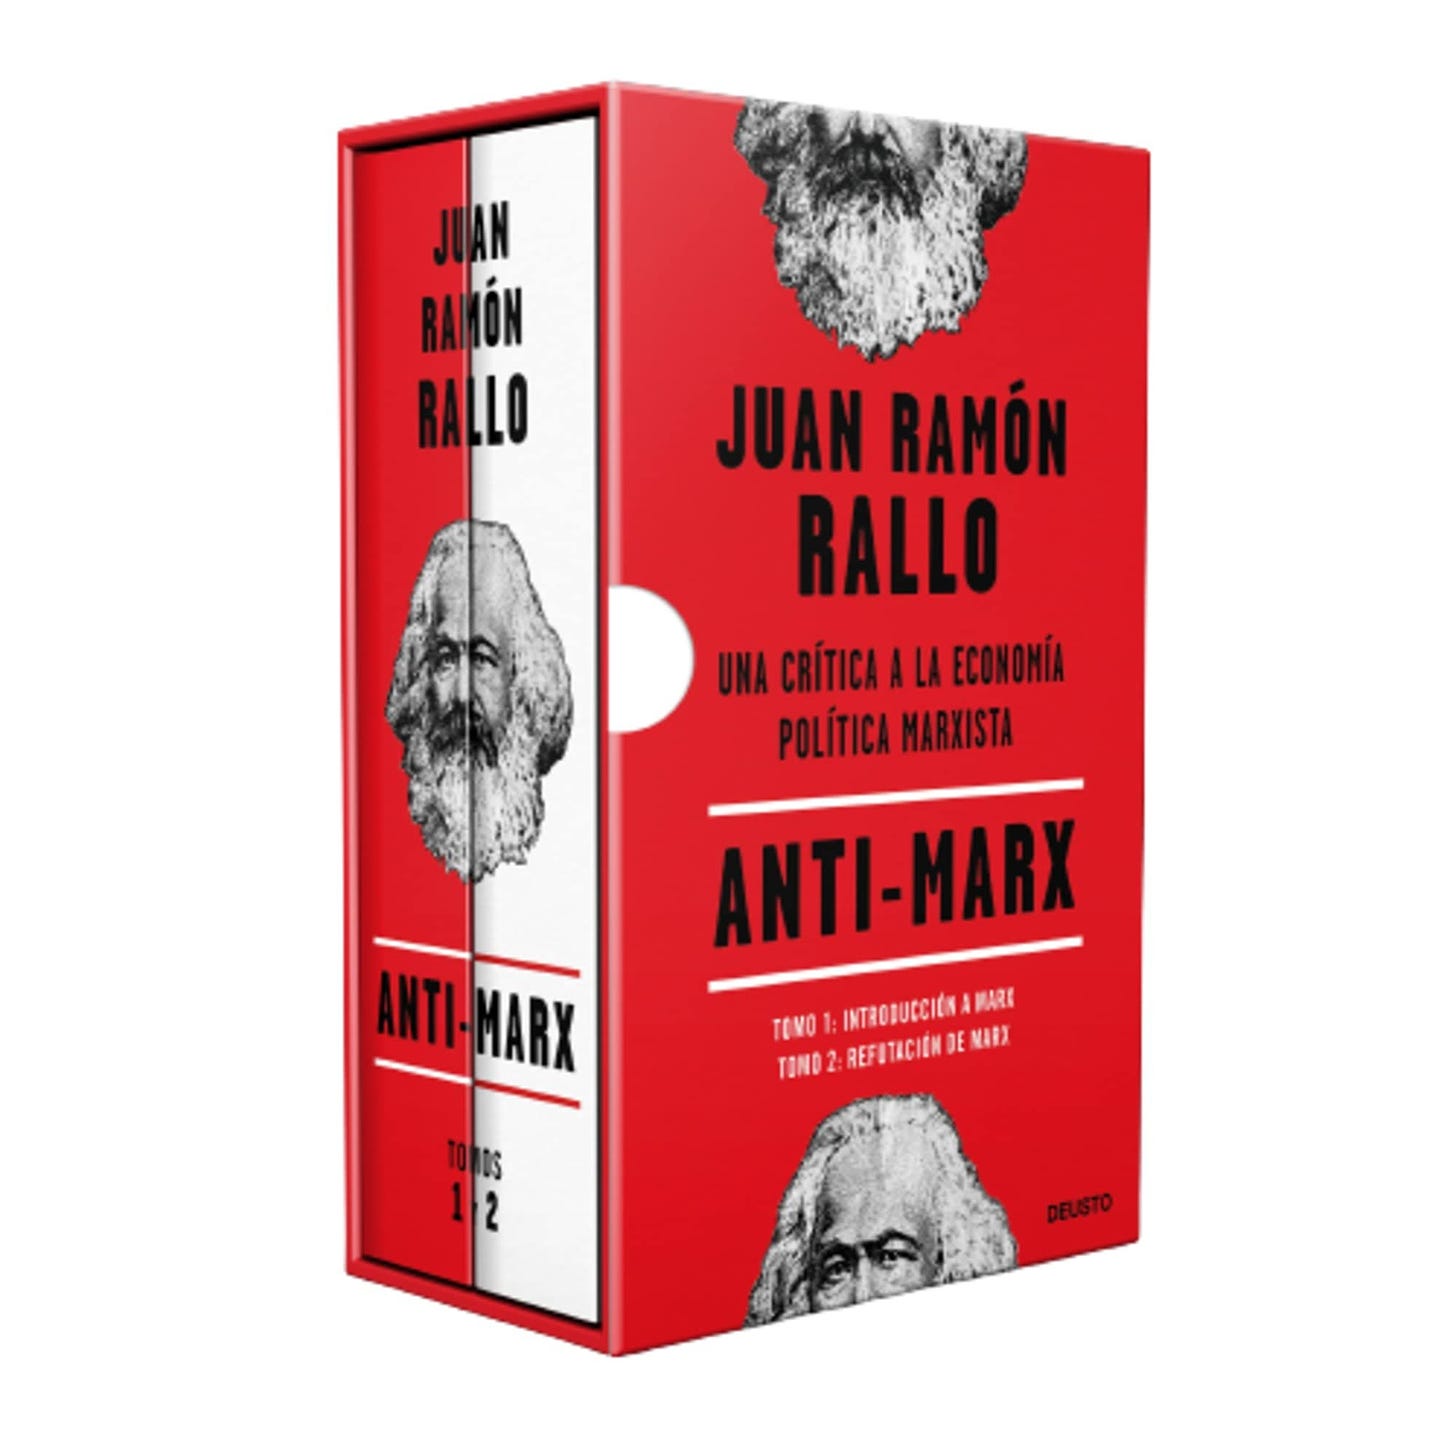 Juan Ramón Rallo on Twitter: "Mi próximo libro, Anti-Marx, estará compuesto  por dos tomos (introducción a Marx y crítica a Marx) que se venderán  conjuntamente. Así quedará el conjunto. Lo tenéis disponible